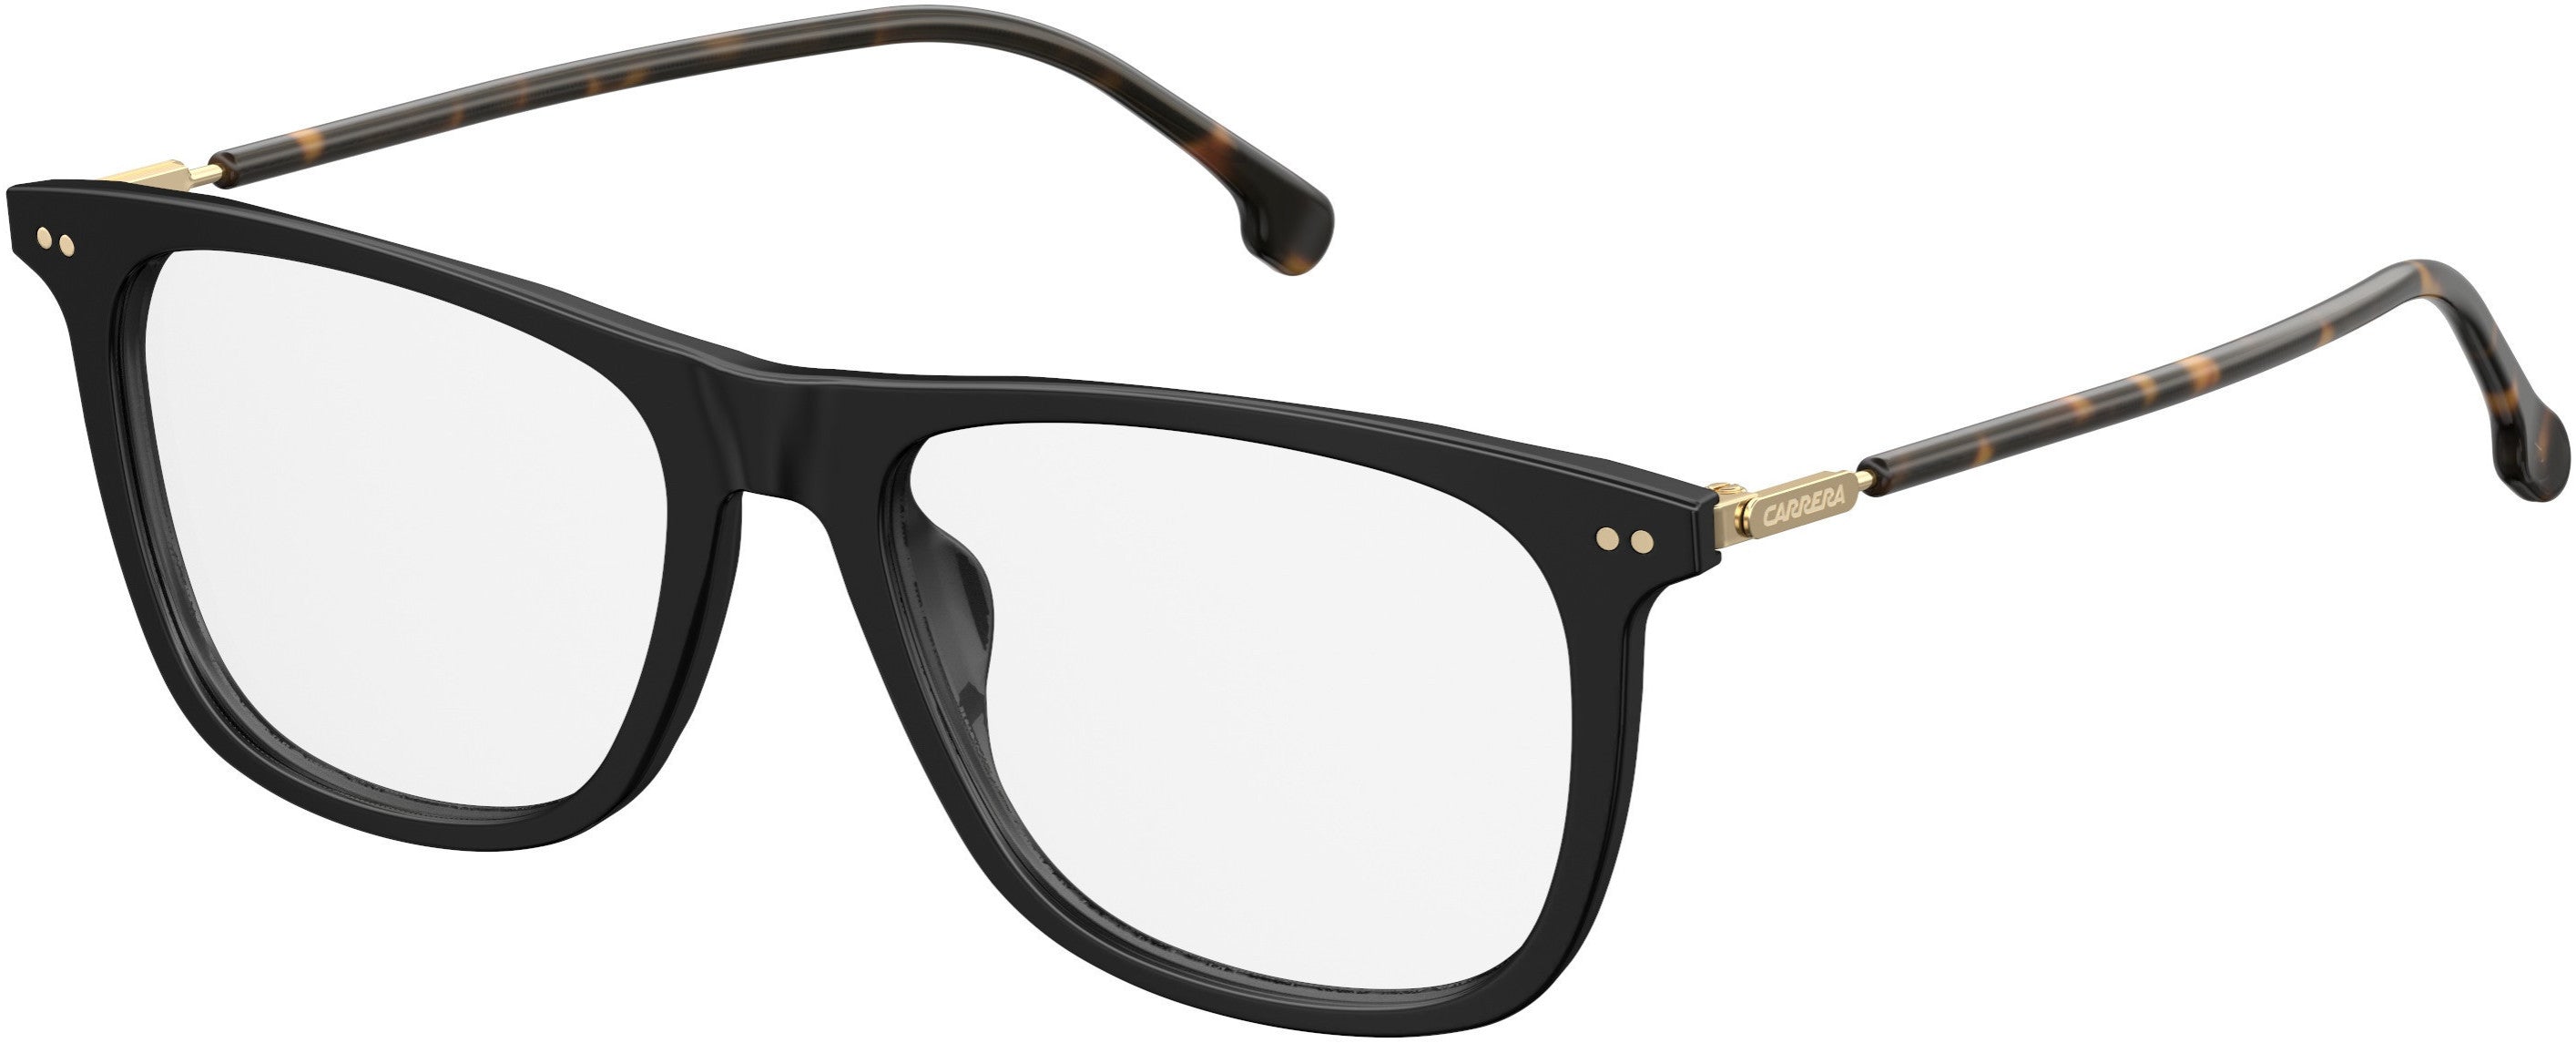  Carrera 144/V Rectangular Eyeglasses 02M2-02M2  Black Gold (00 Demo Lens)